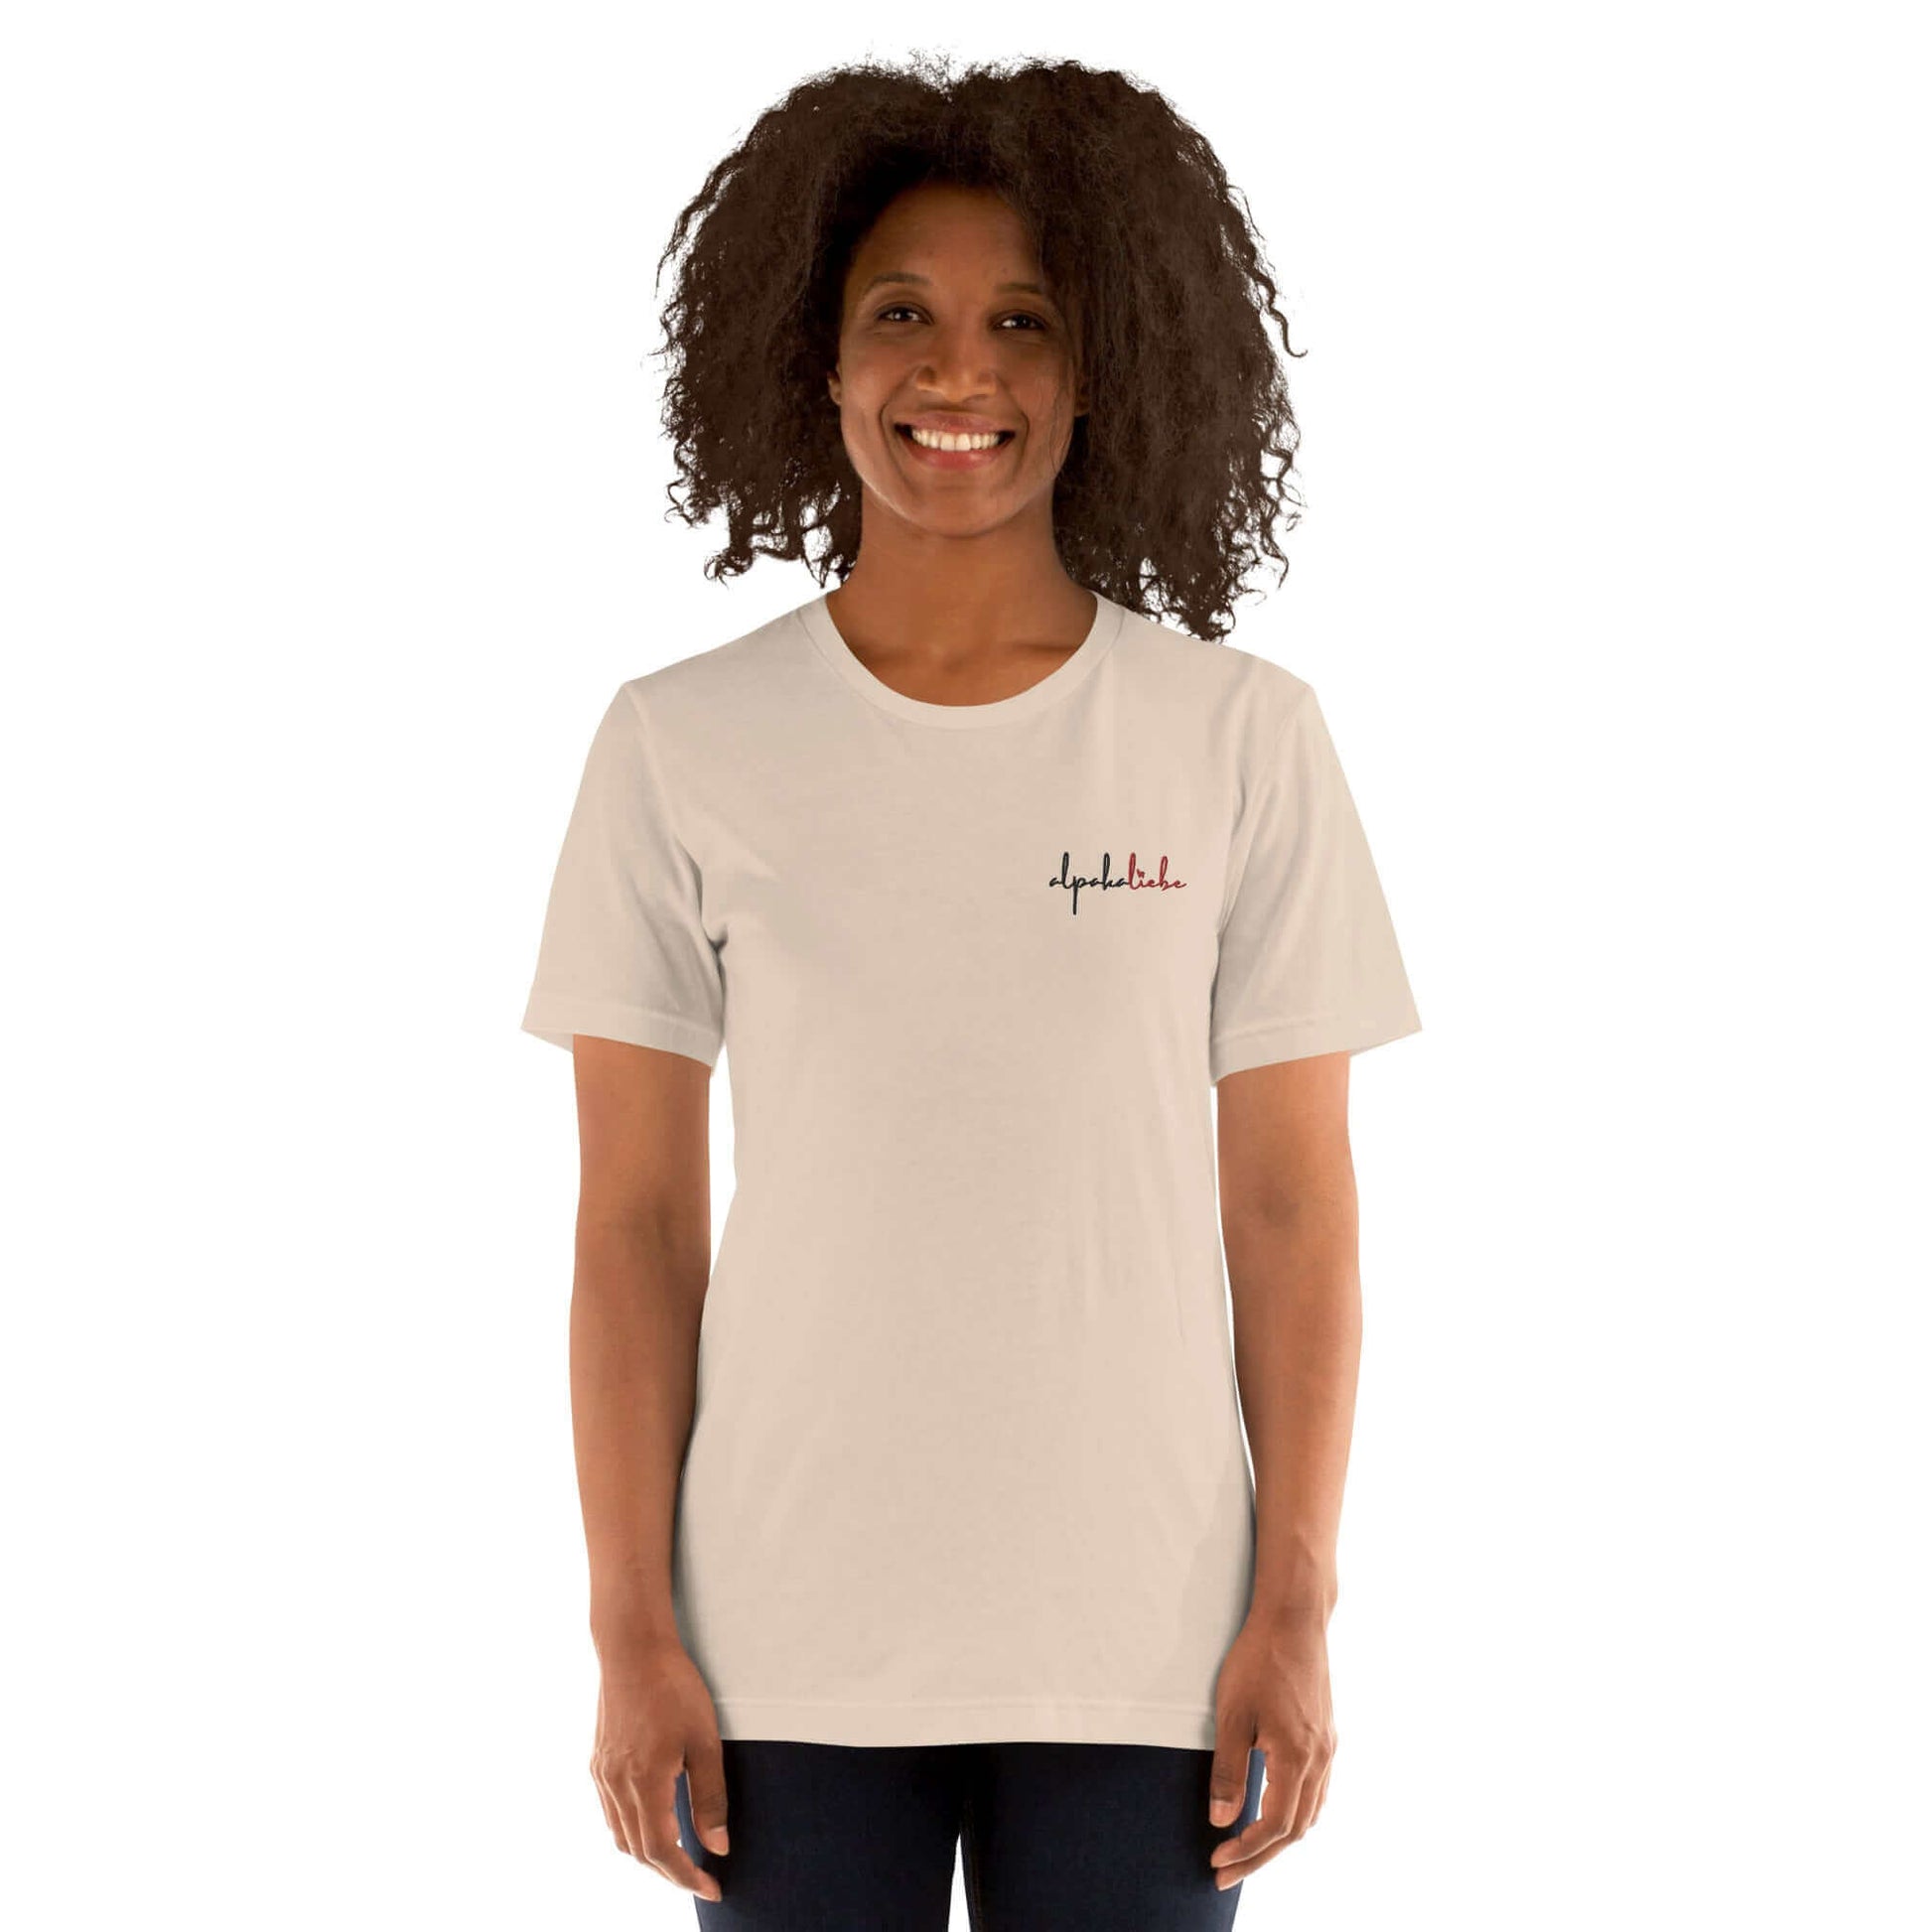 Komfortables Baumwoll-T-Shirt mit Alpaka-Design, perfekt für den Alltag.